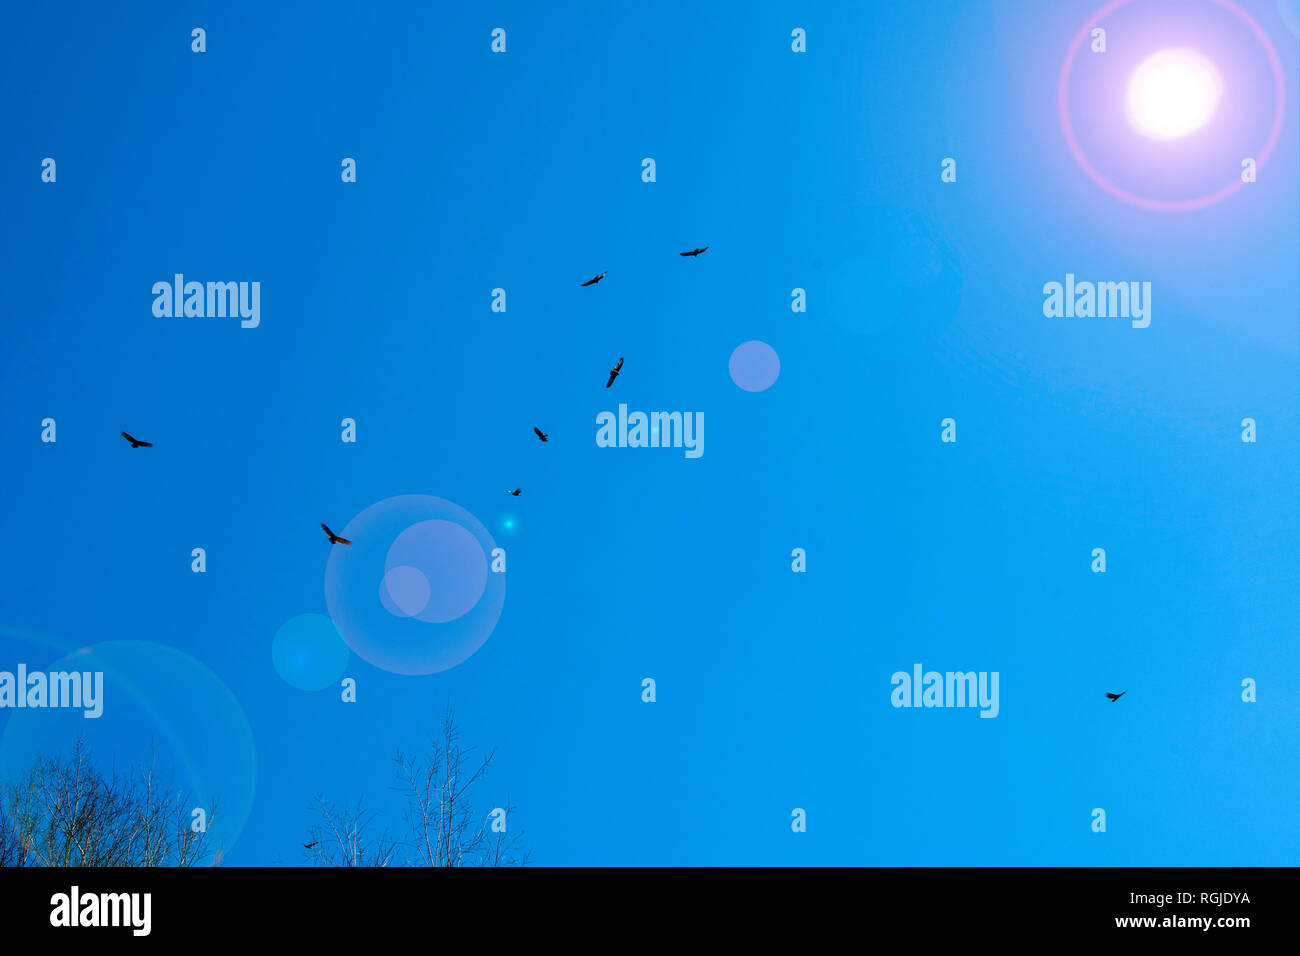 Dans une photo illustration fantaisiste, un troupeau de l'urubu, Cathartes aura, cercle contre un ciel bleu profond avec des reflets solaires, réel et artificia Banque D'Images